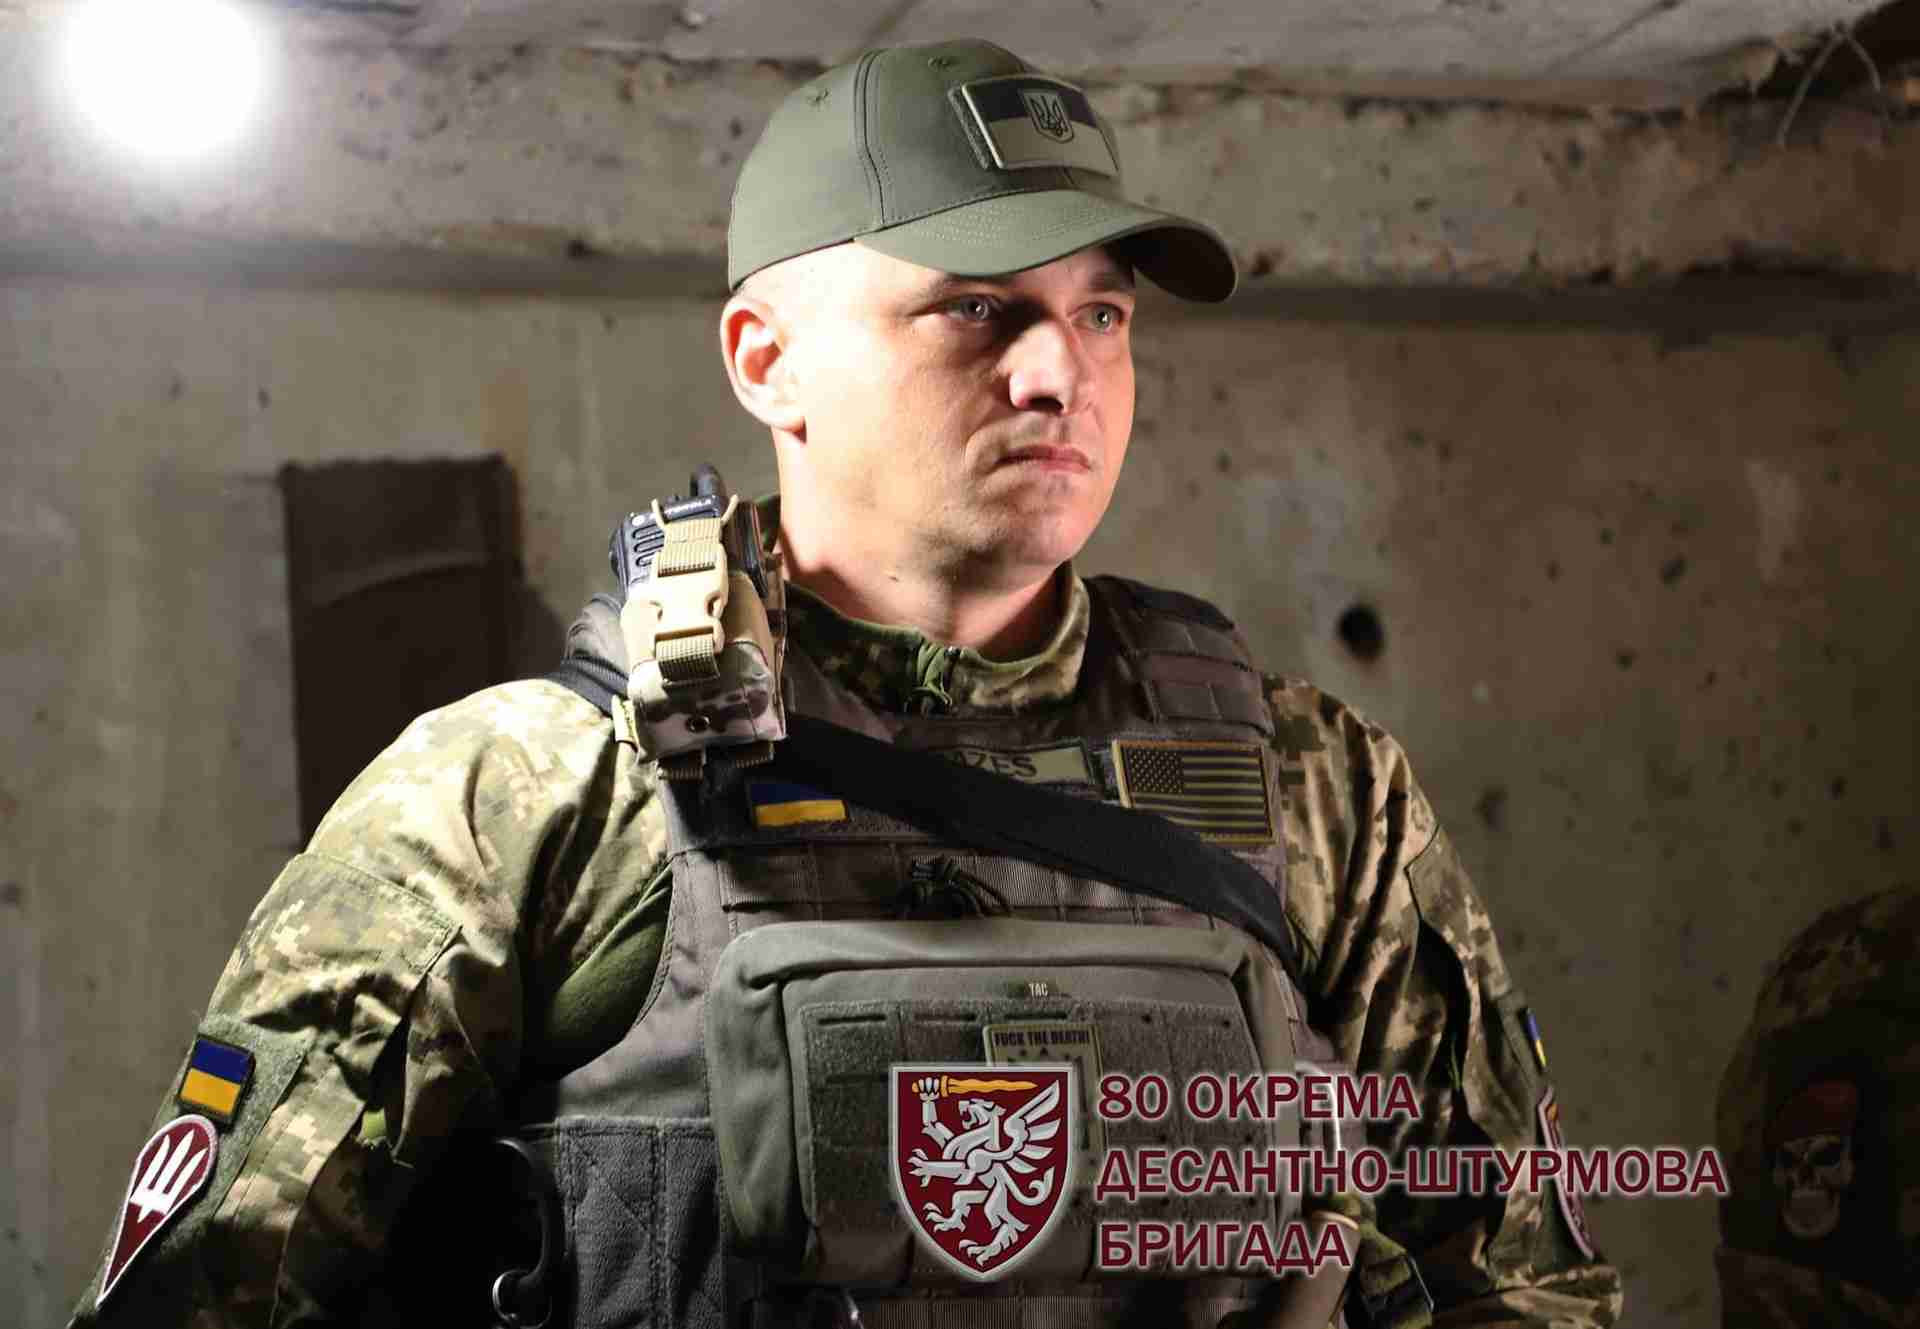 Історії війни в обличчях: що мотивує львівських десантників відважно захищати Україну та успішно виконувати бойові завдання? (ФОТО)